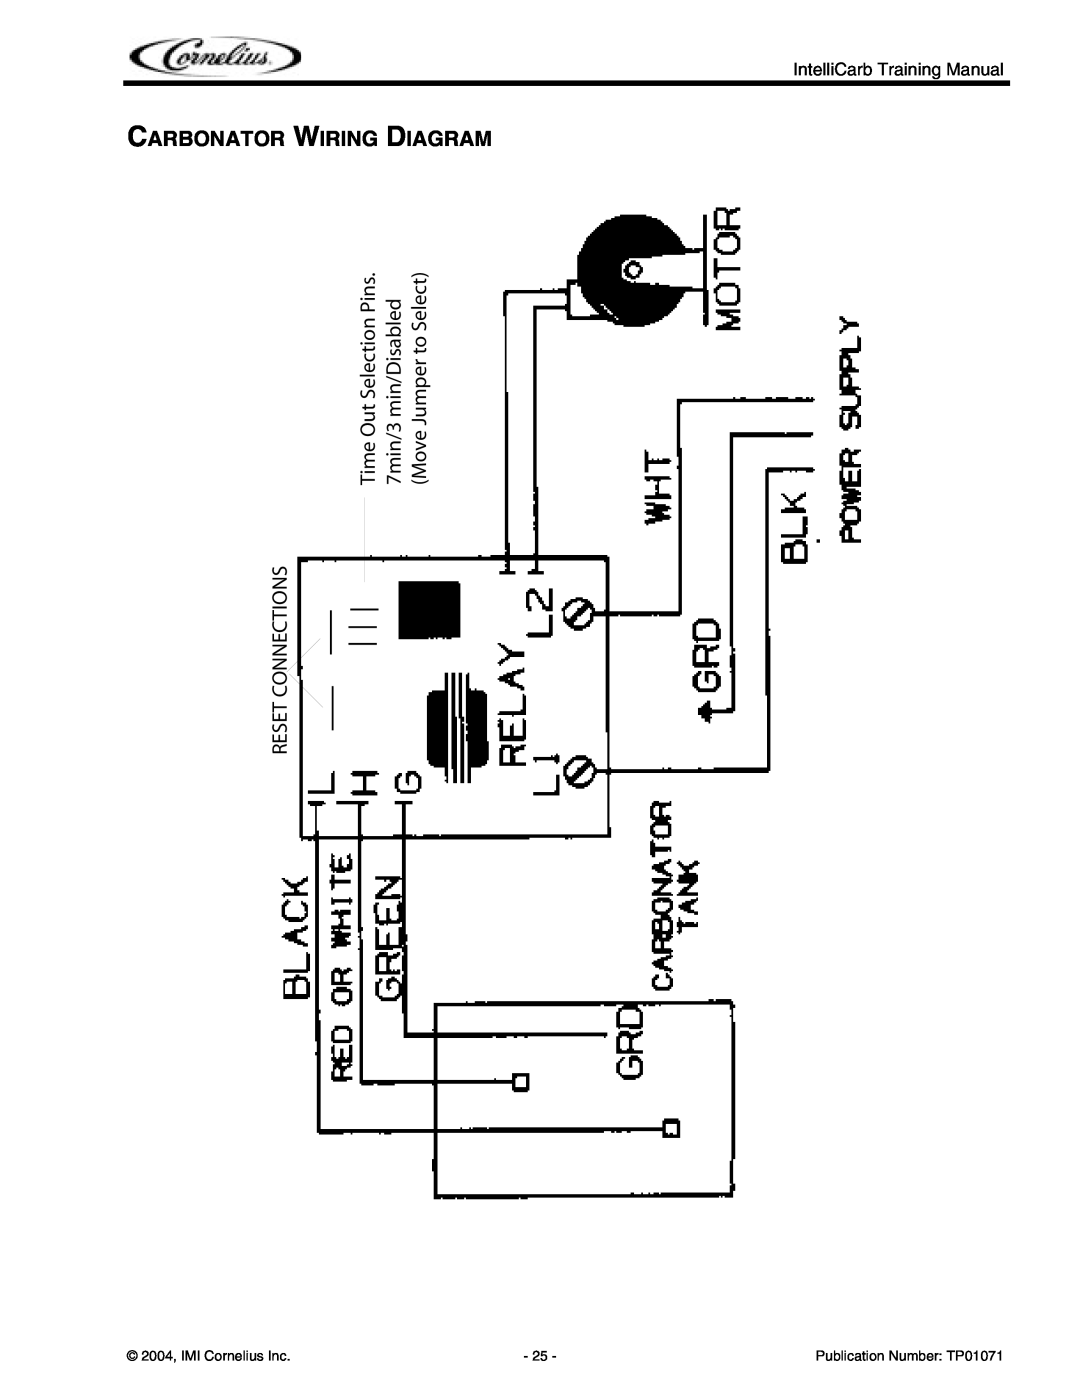 Cornelius Cold Beverage Dispenser manual Carbonator Wiring Diagram, Reset Connections, 2004, IMI Cornelius Inc 